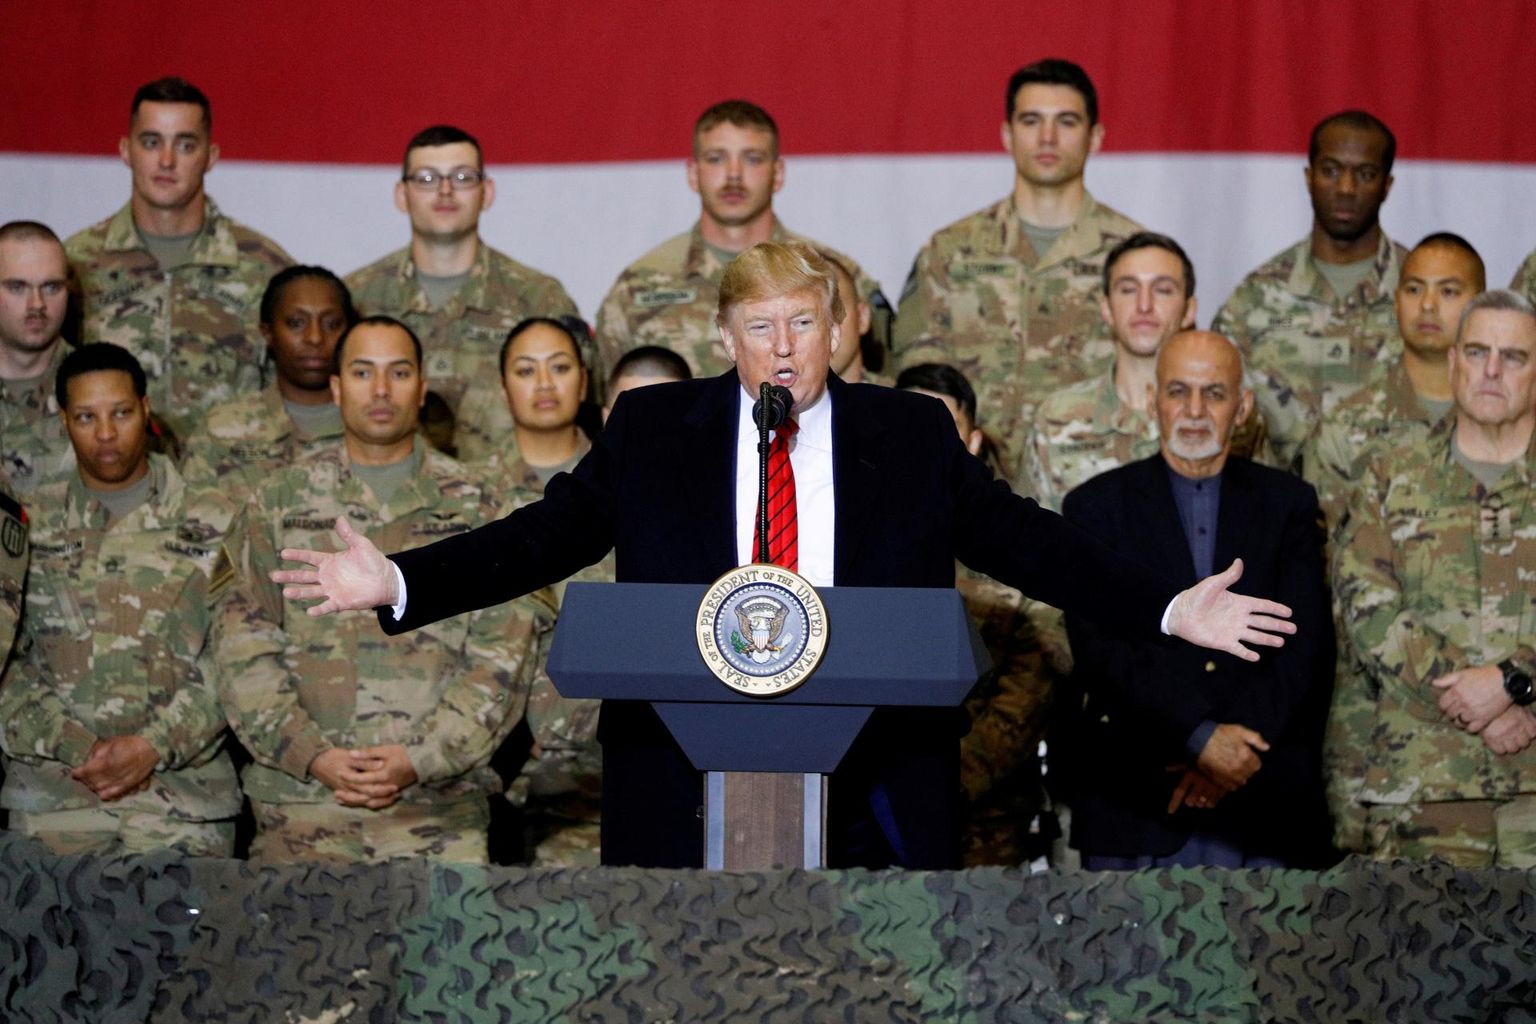 Ameerika Ühendriikide president Donald Trump külastamas mullu sügisel Afganistanis teenivaid USA sõdureid. Osa allikate sõnul teadis Valge Maja juba eelmisel aastal Venemaa väidetavast pearahaleppest Talibaniga, millega Moskva lubas äärmusrühmitusele raha USA sõdurite ründamise eest. 